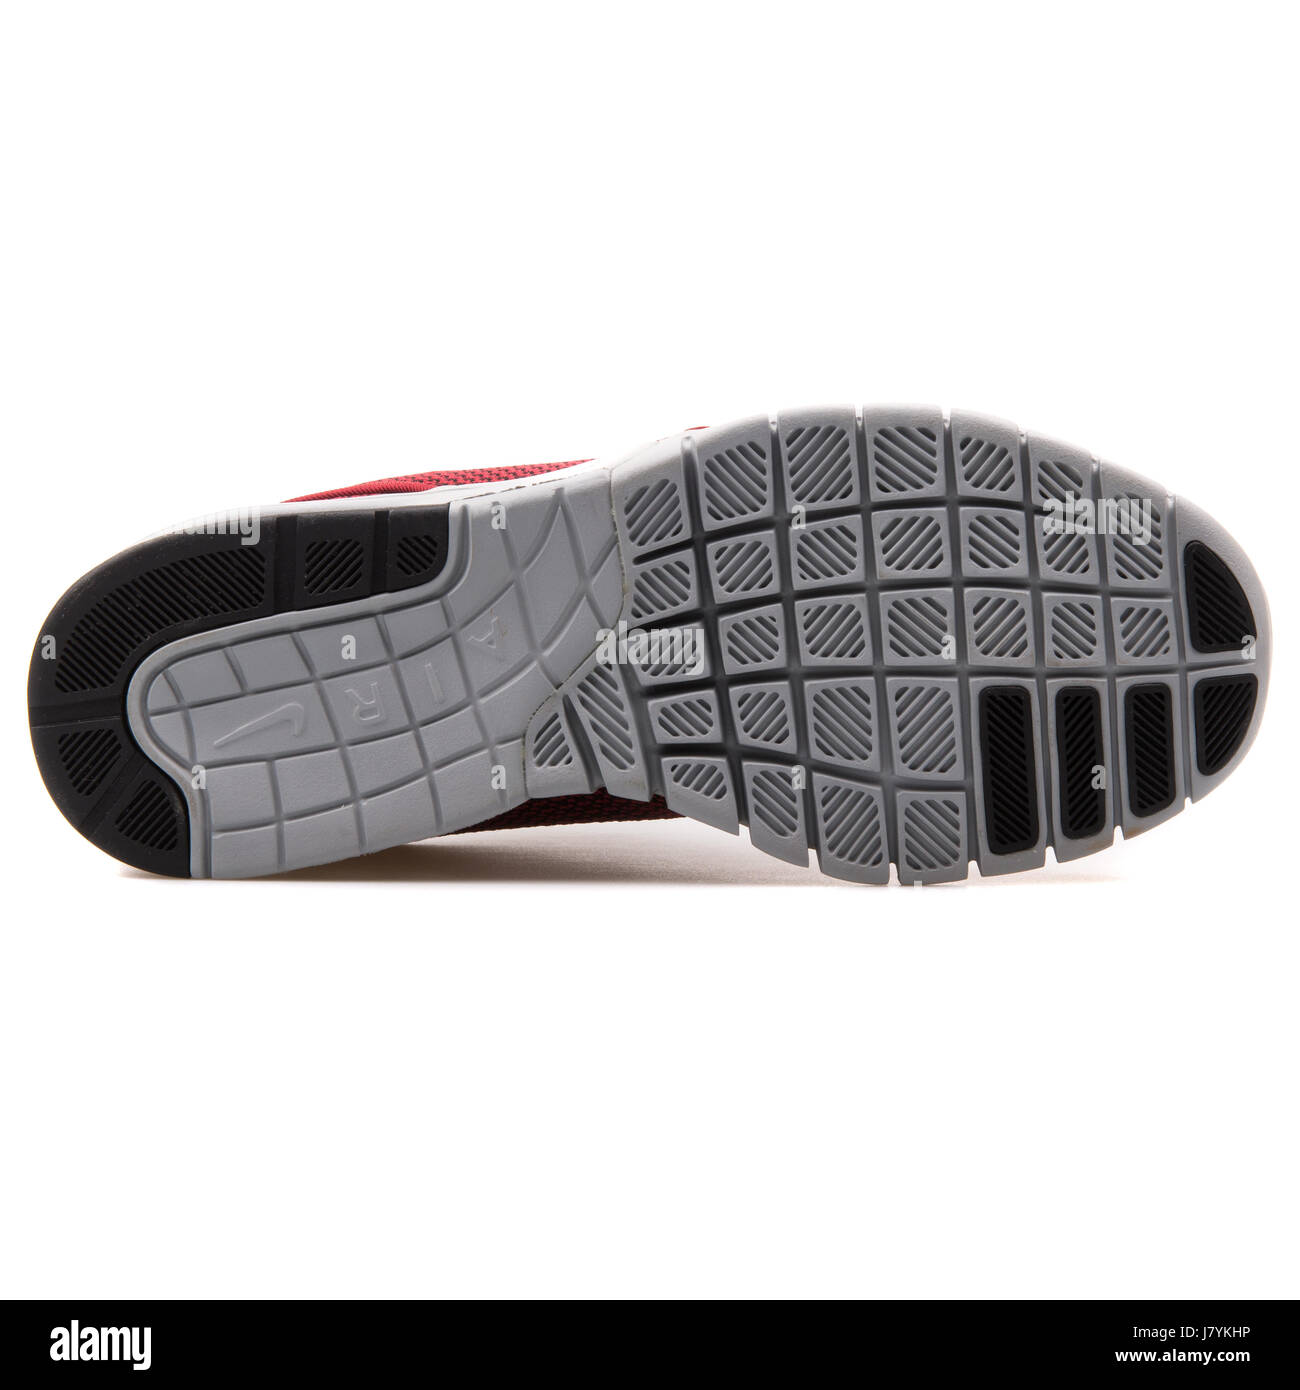 Nike Stefan Janoski Max Men's Red Black Skateboarding Sneakers - 631303-601  Stock Photo - Alamy